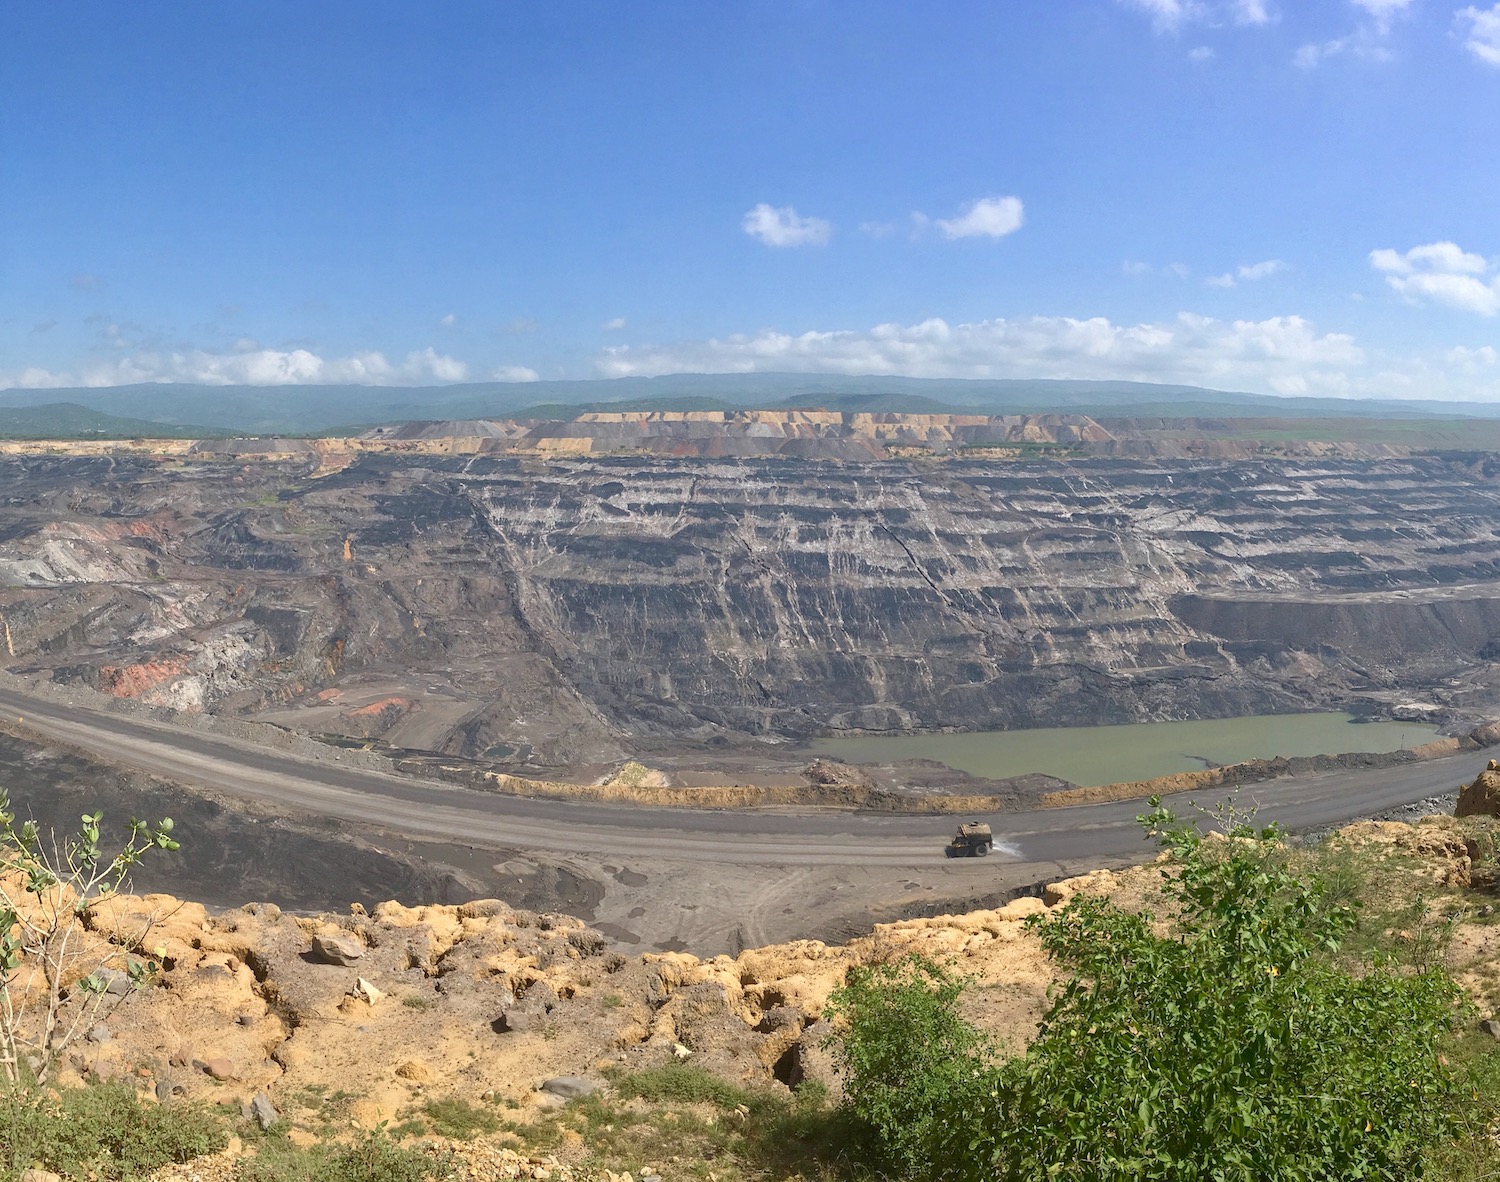 Cerrjon open-pit coal mine in Colombia